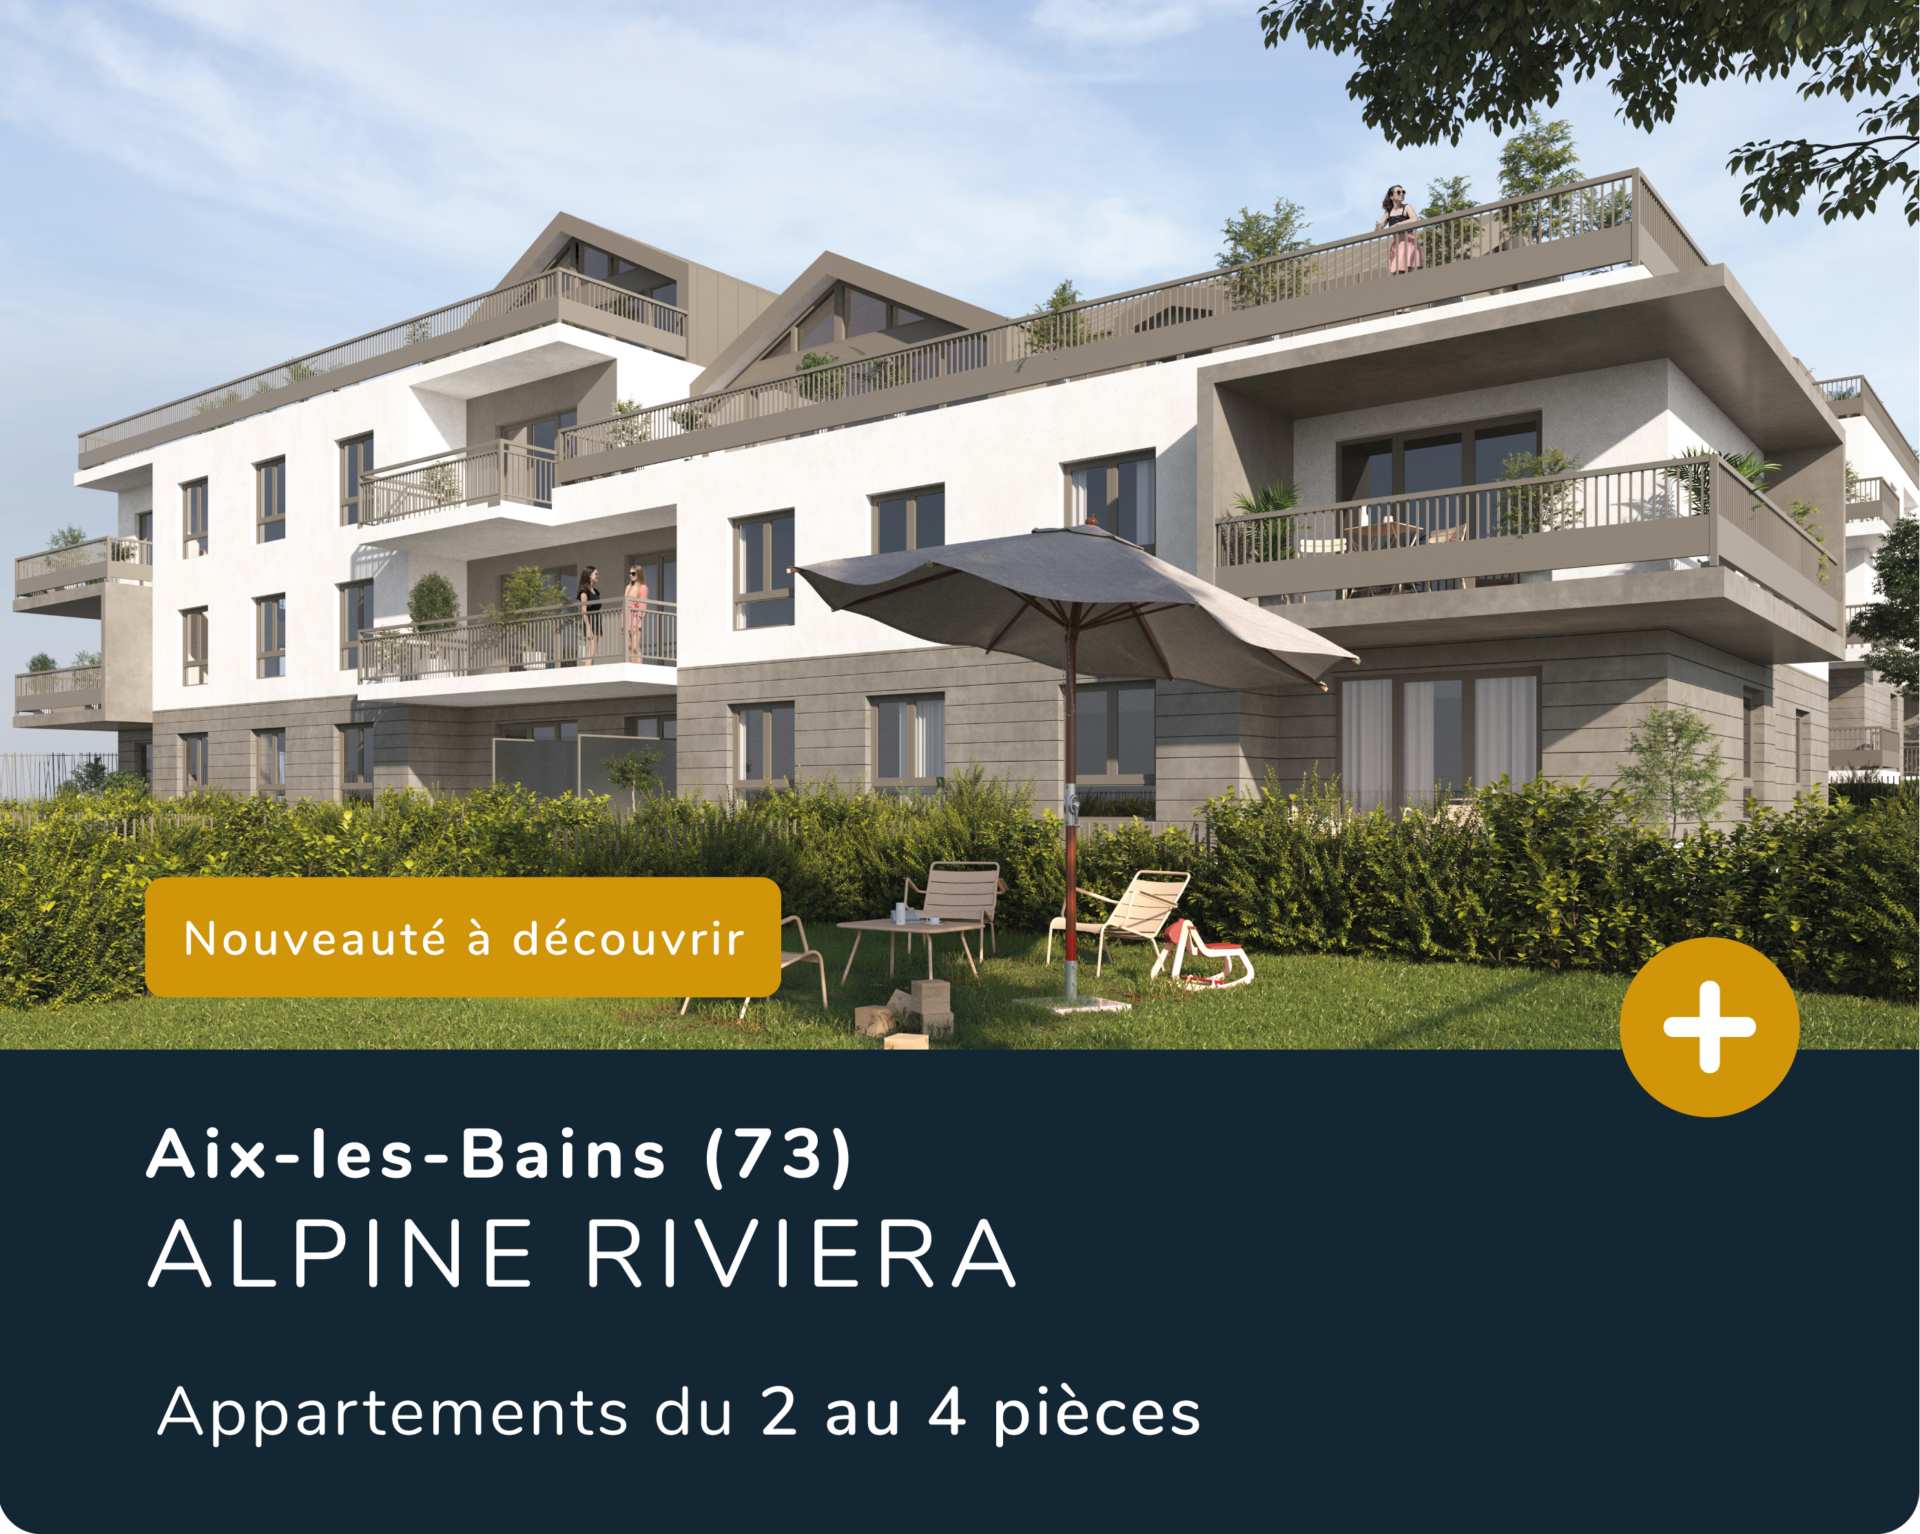 Investissement PINEL à Aix les Bains